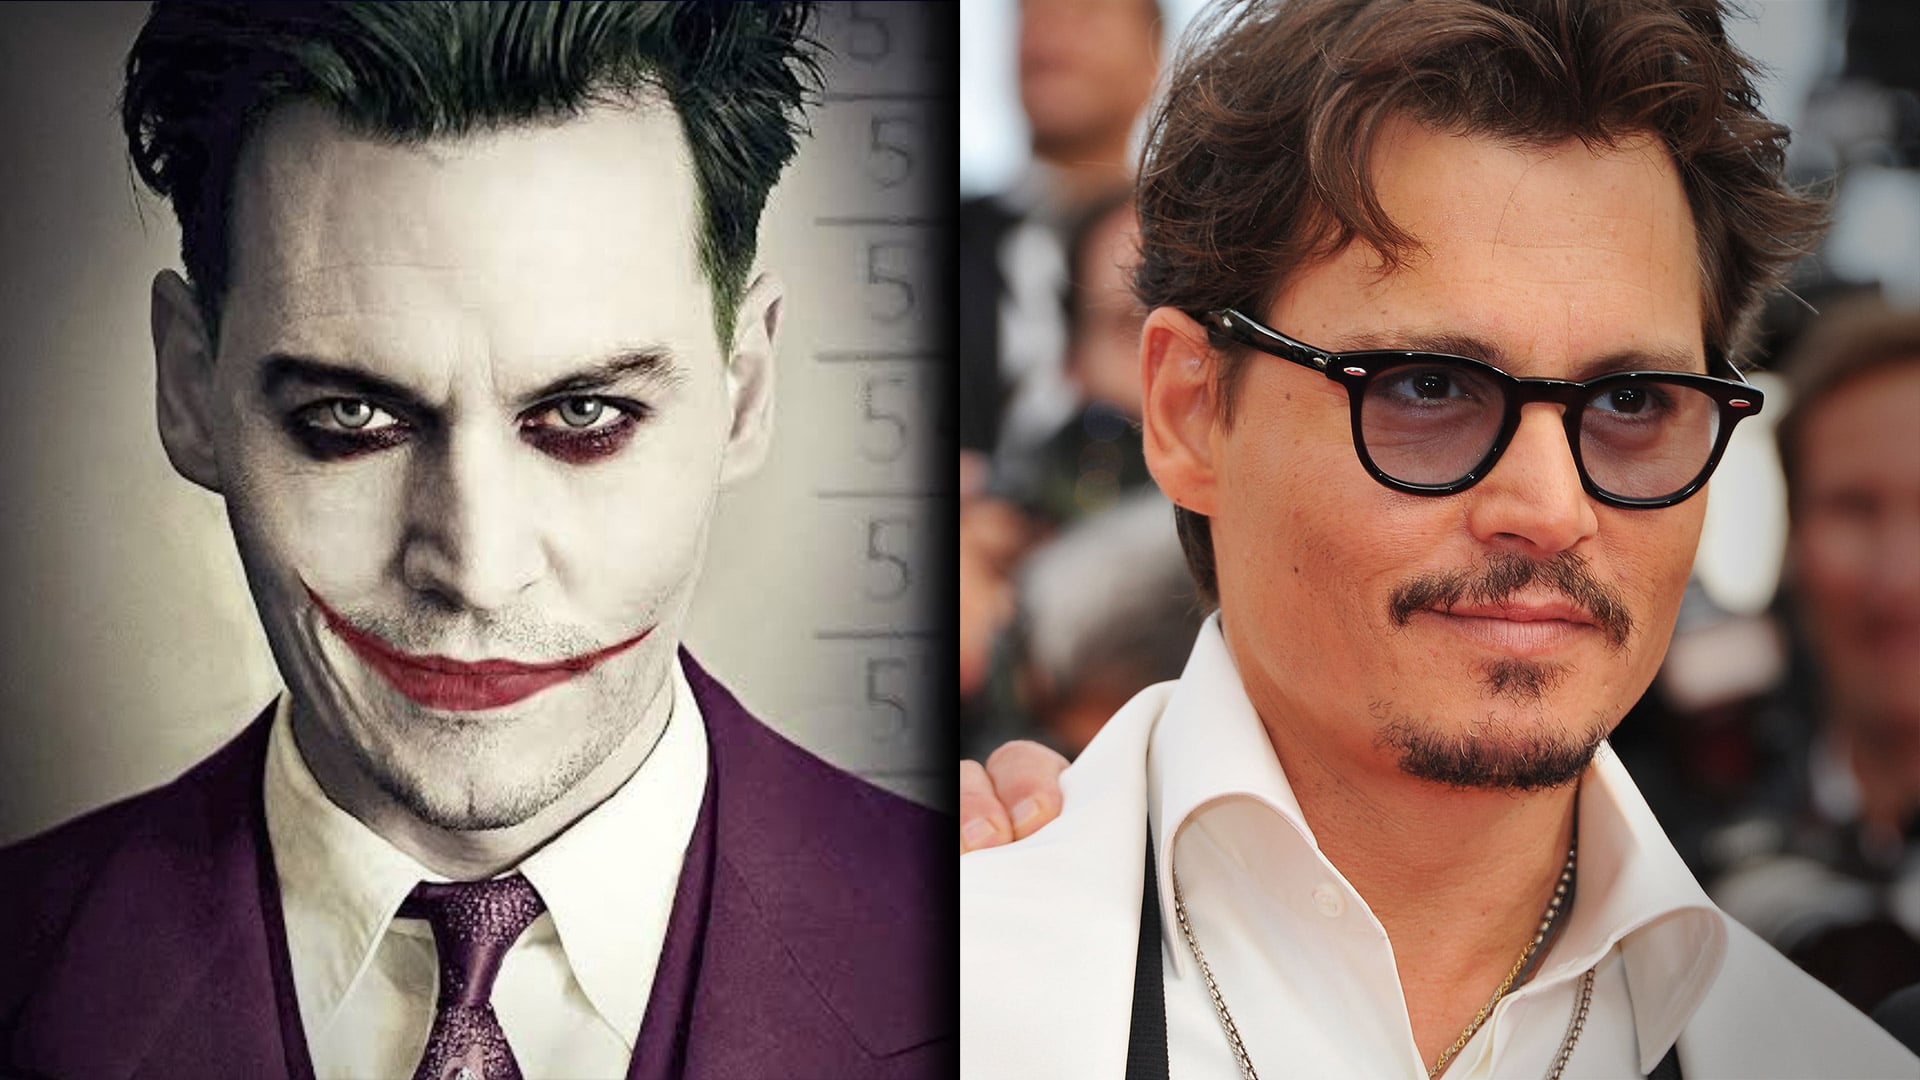 Johnny Depp rumored to be joker in “Batman Beyond”